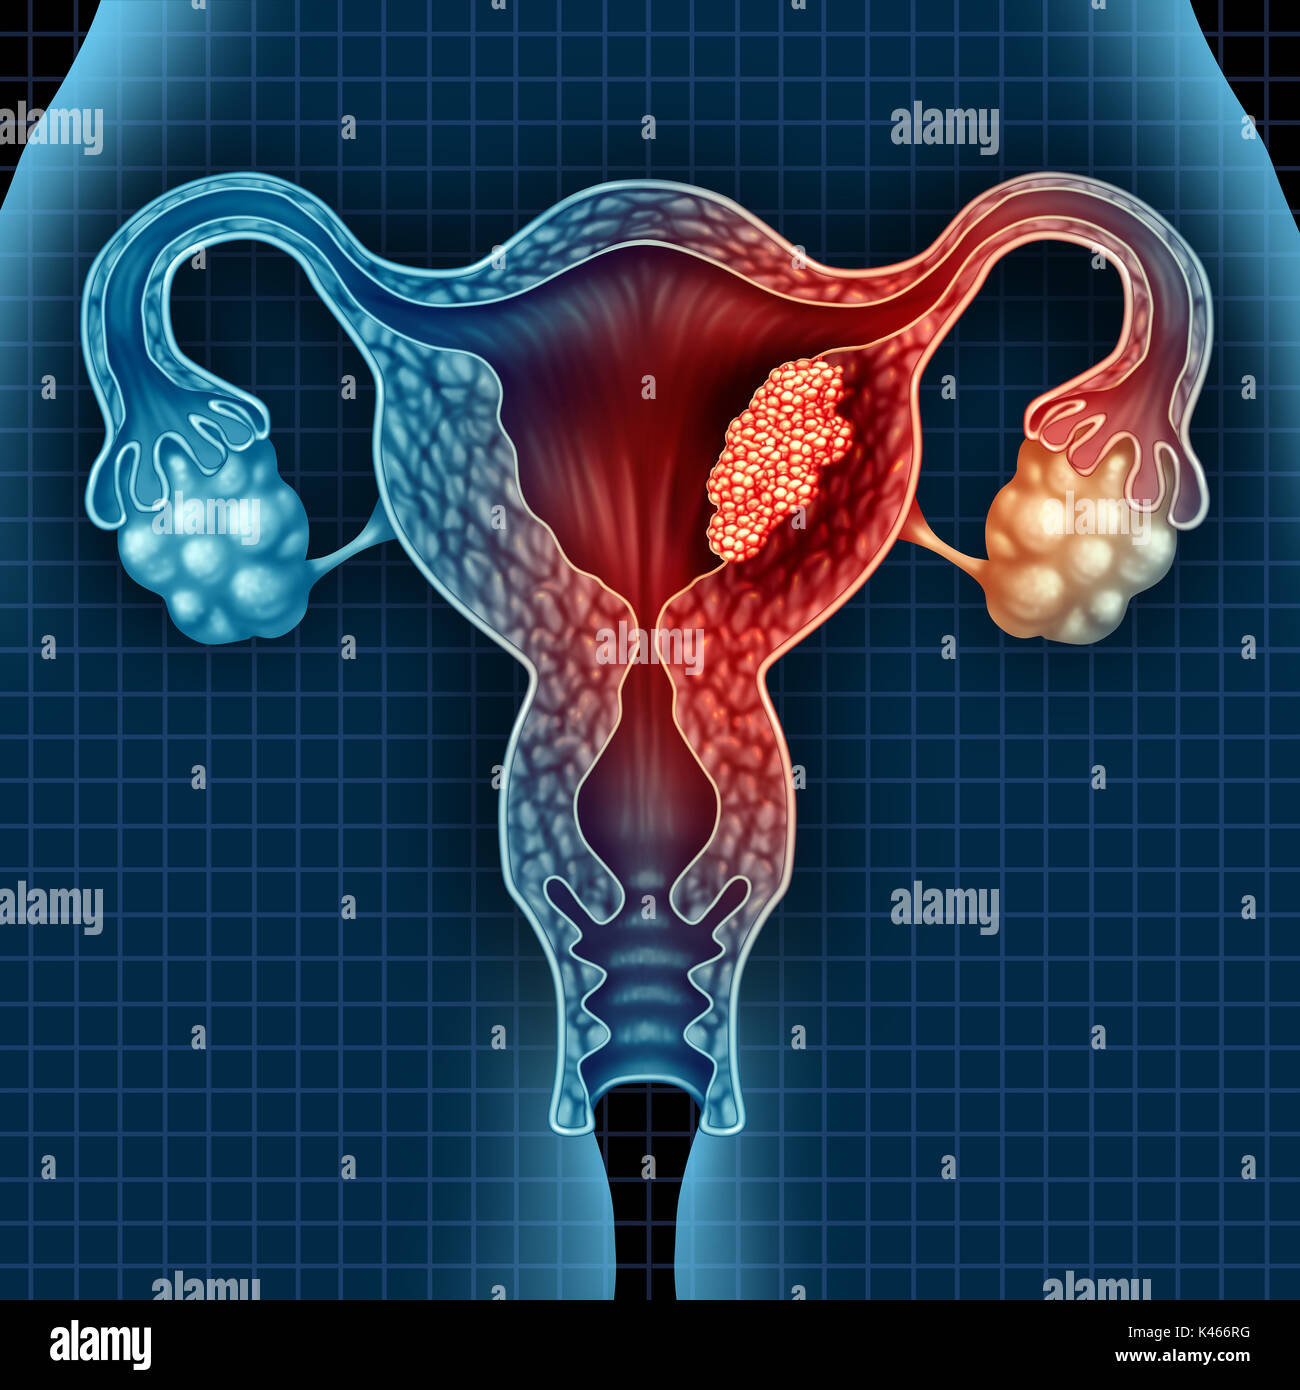 Utero cancro endometriale e tumore maligno come uterina concetto medico come pericolosi crescere le cellule in un corpo femmina di attaccare il sist riproduttiva Foto Stock